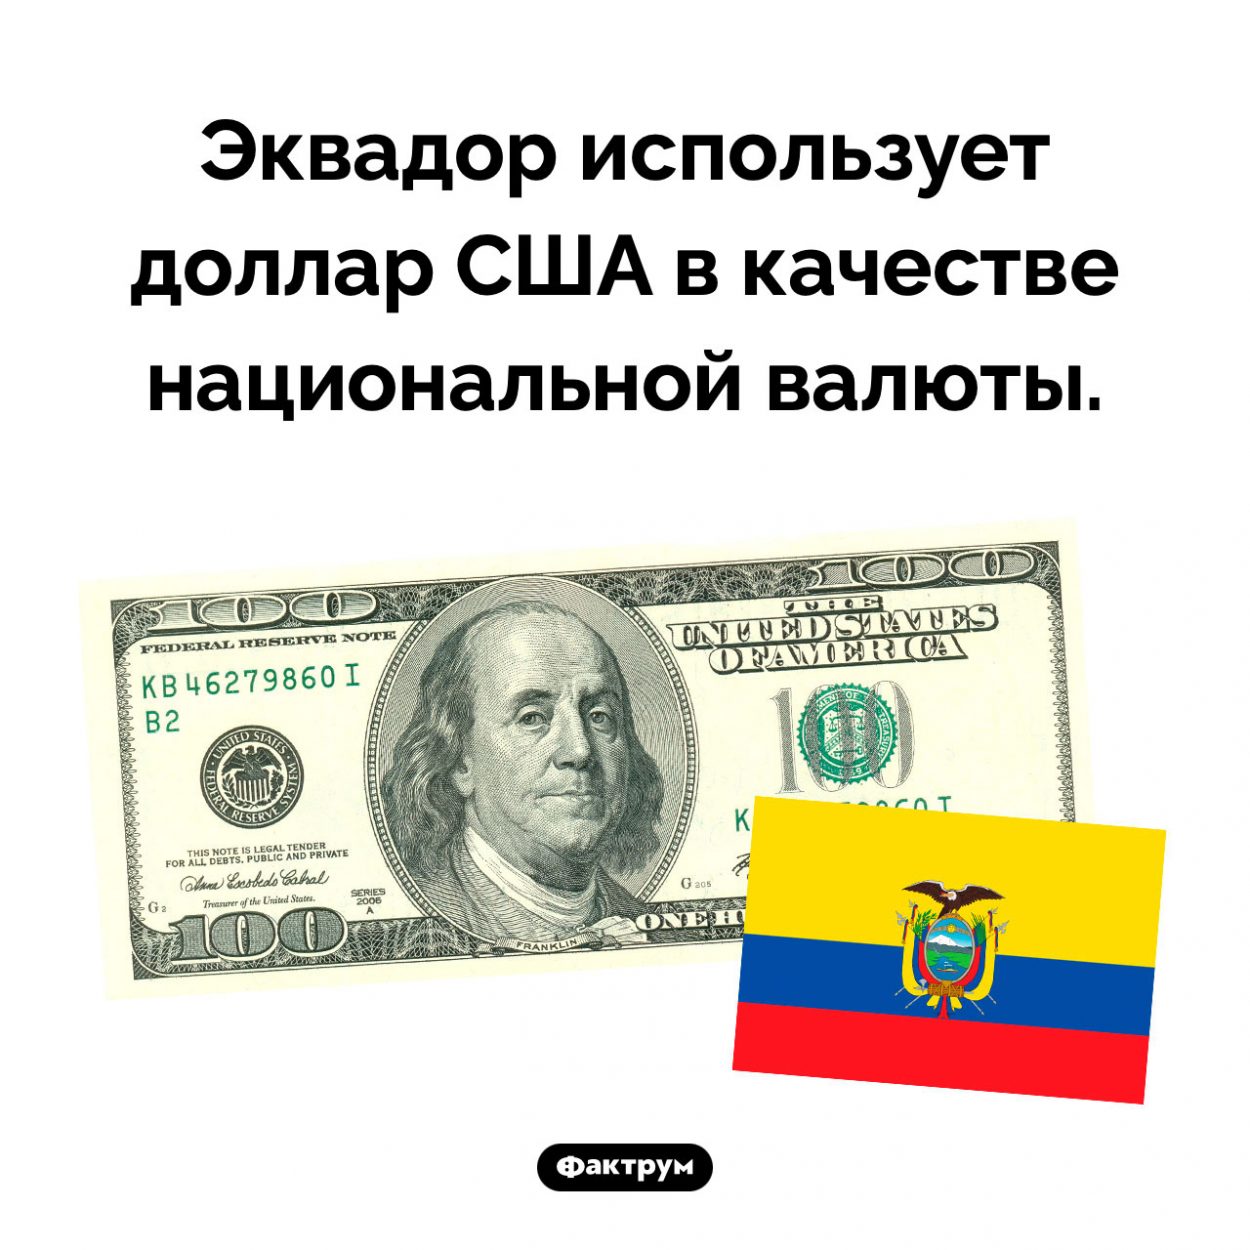 Какие деньги являются национальной валютой в Эквадоре. Эквадор использует доллар США в качестве национальной валюты.